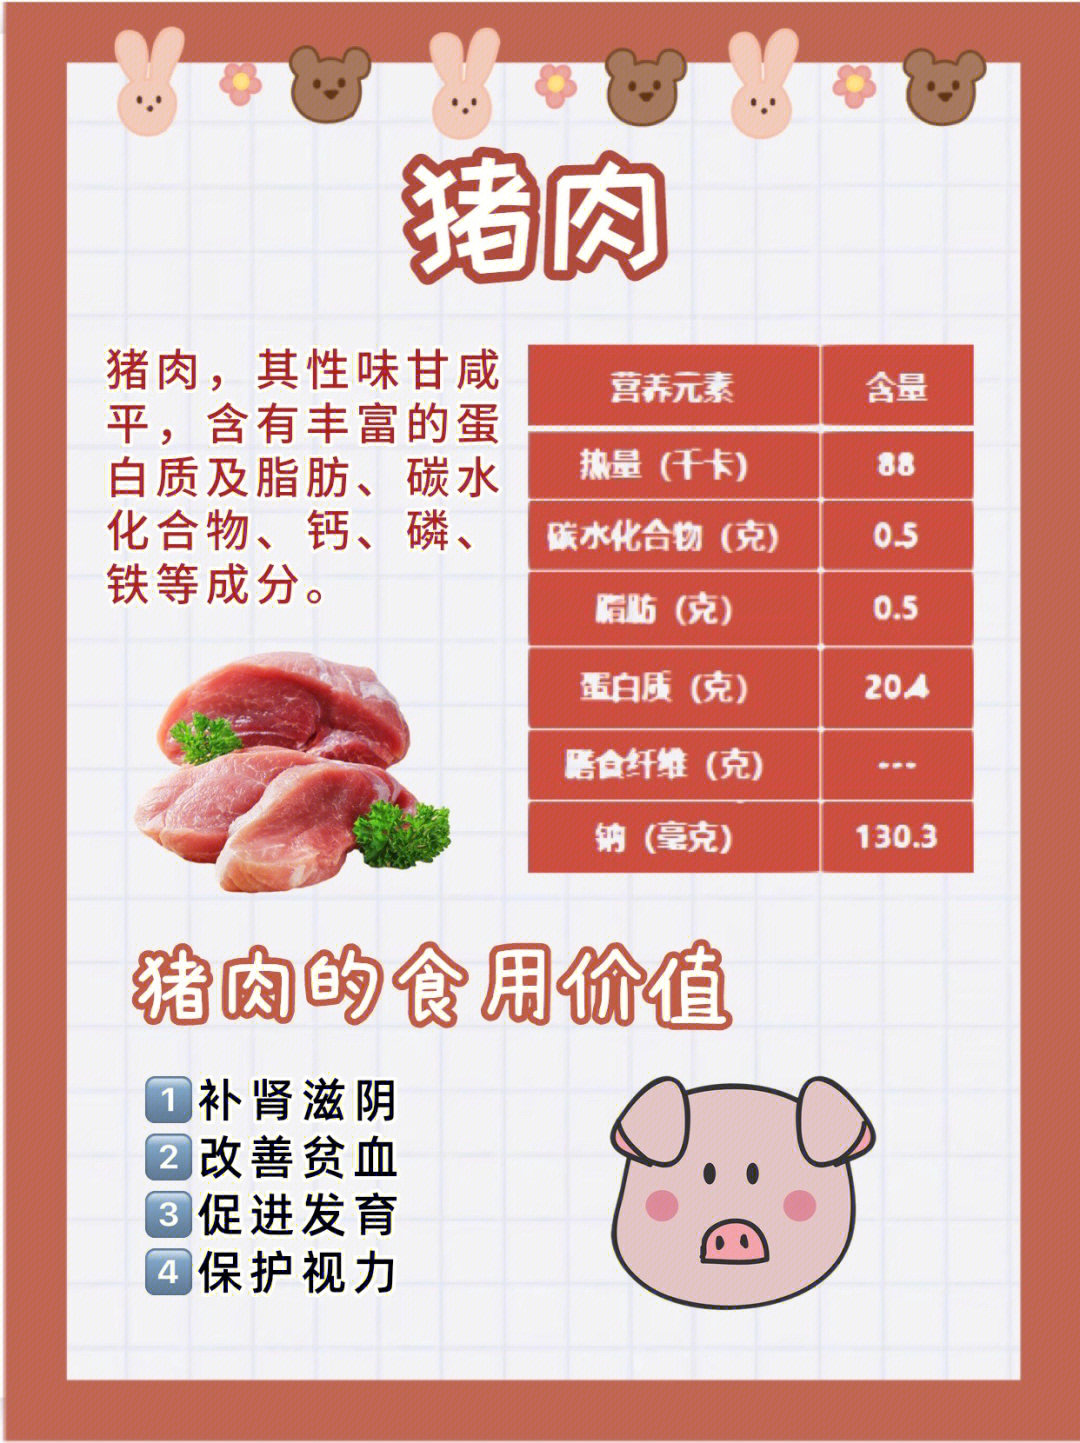 猪肉含丰富的蛋白质脂肪碳水化合物